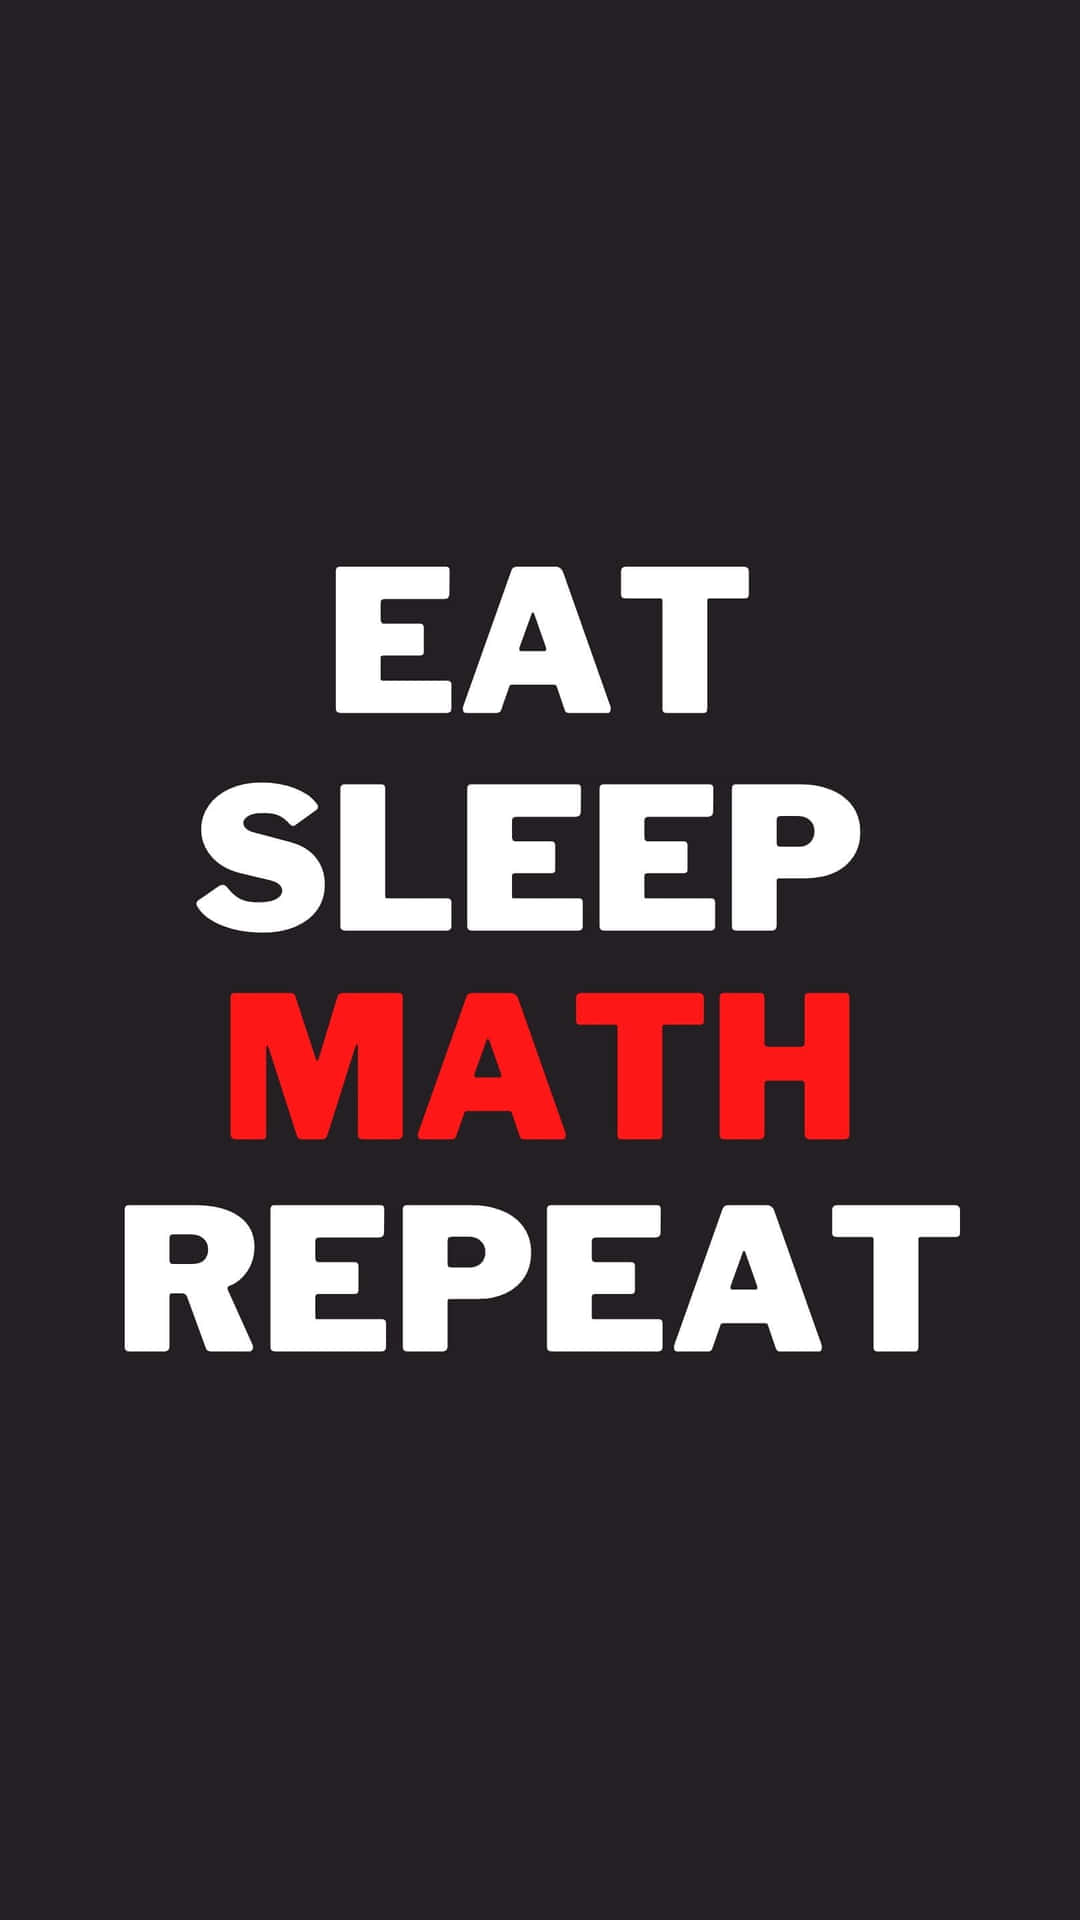 Eat Sleep Math Repeat - Eat Sleep Math Repeat Wallpaper